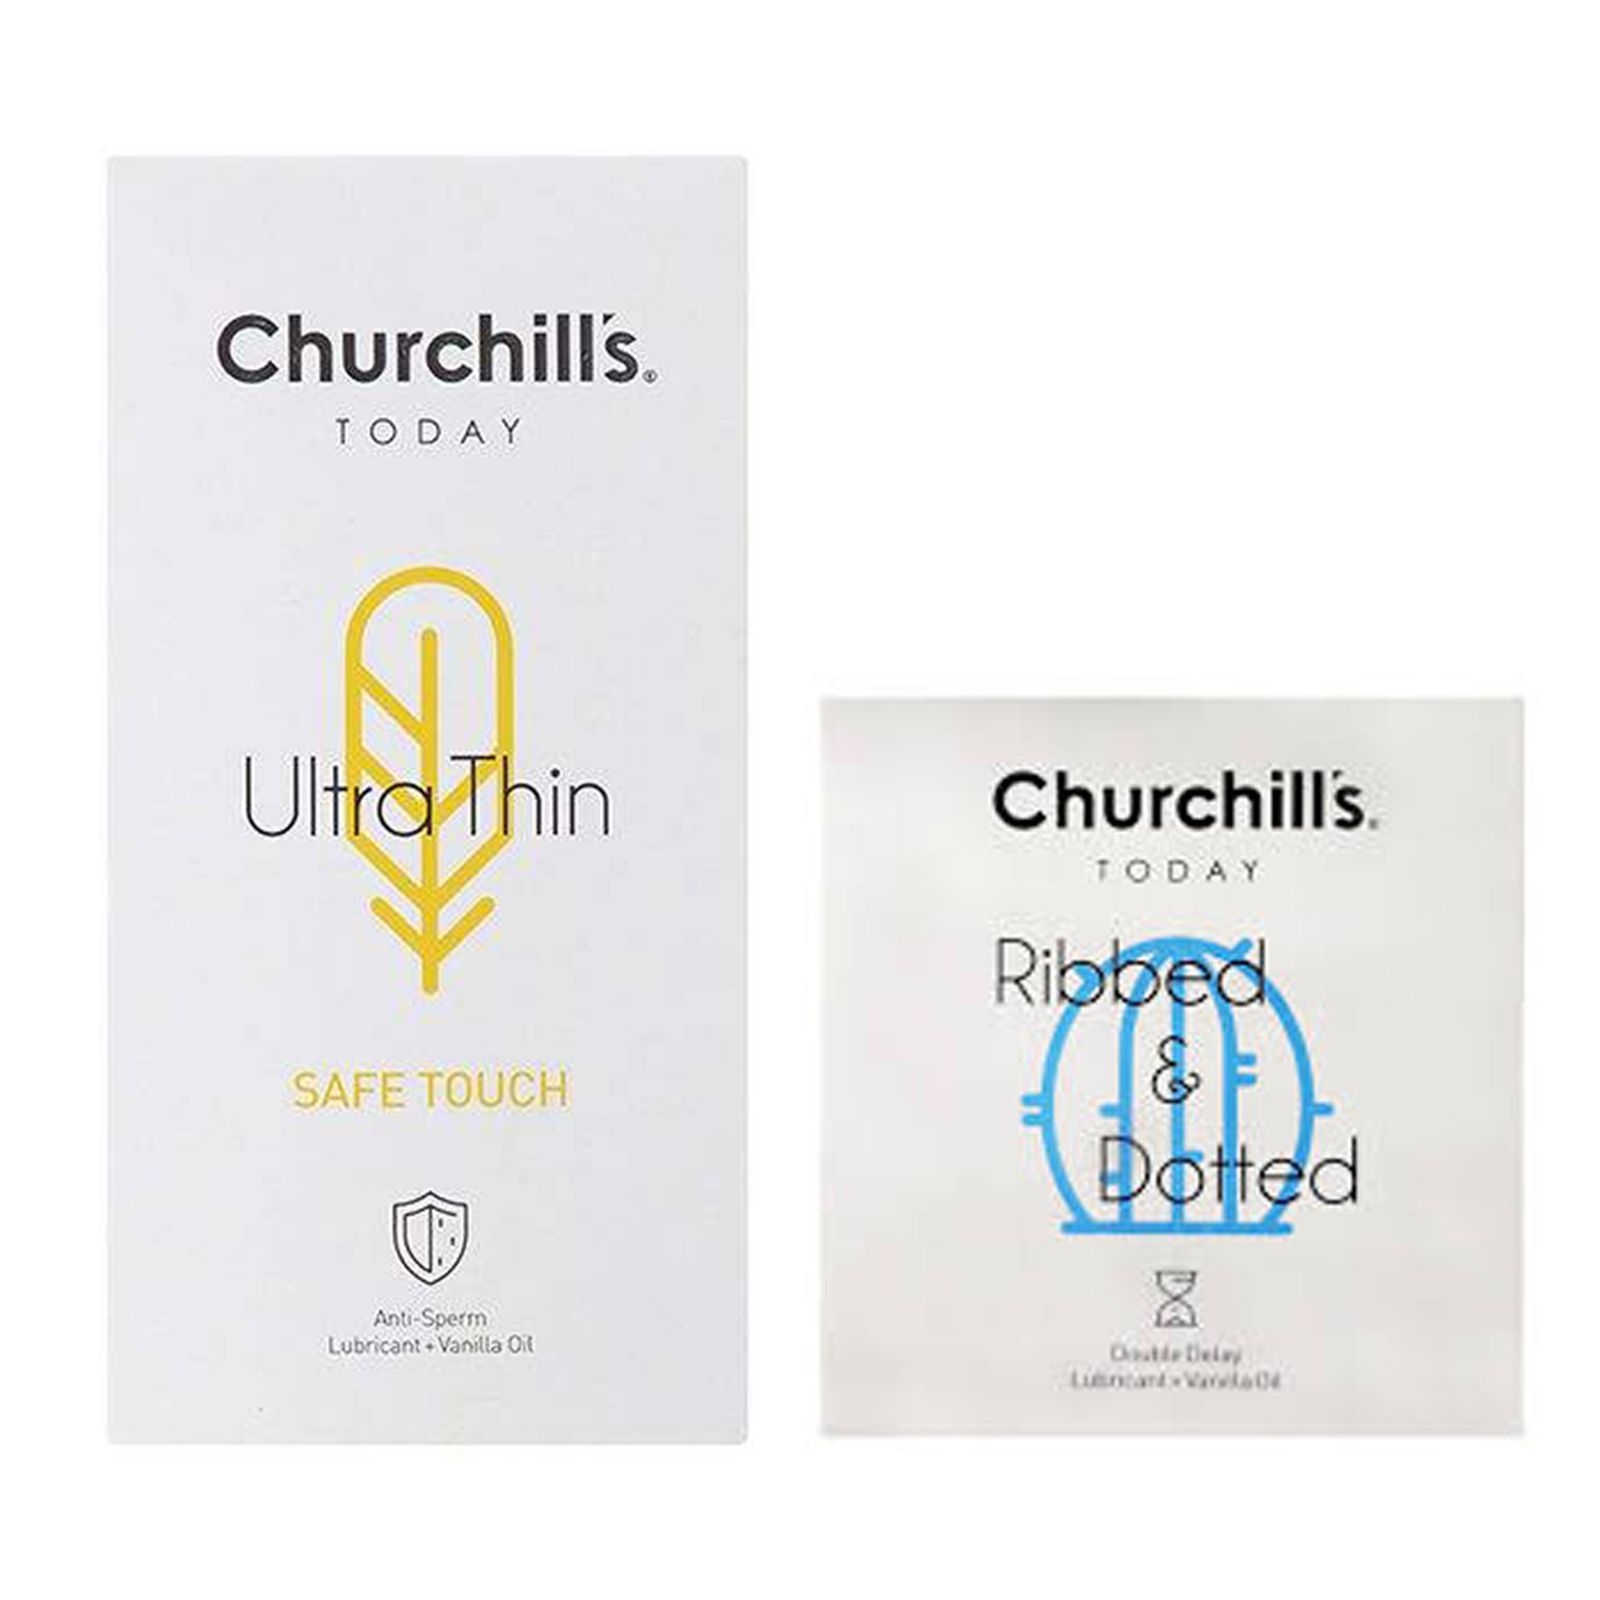 کاندوم چرچیلز مدل Safe Touch بسته 12 عددی به همراه کاندوم چرچیلز مدل شیاردار و خاردار بسته 3 عددی -  - 1